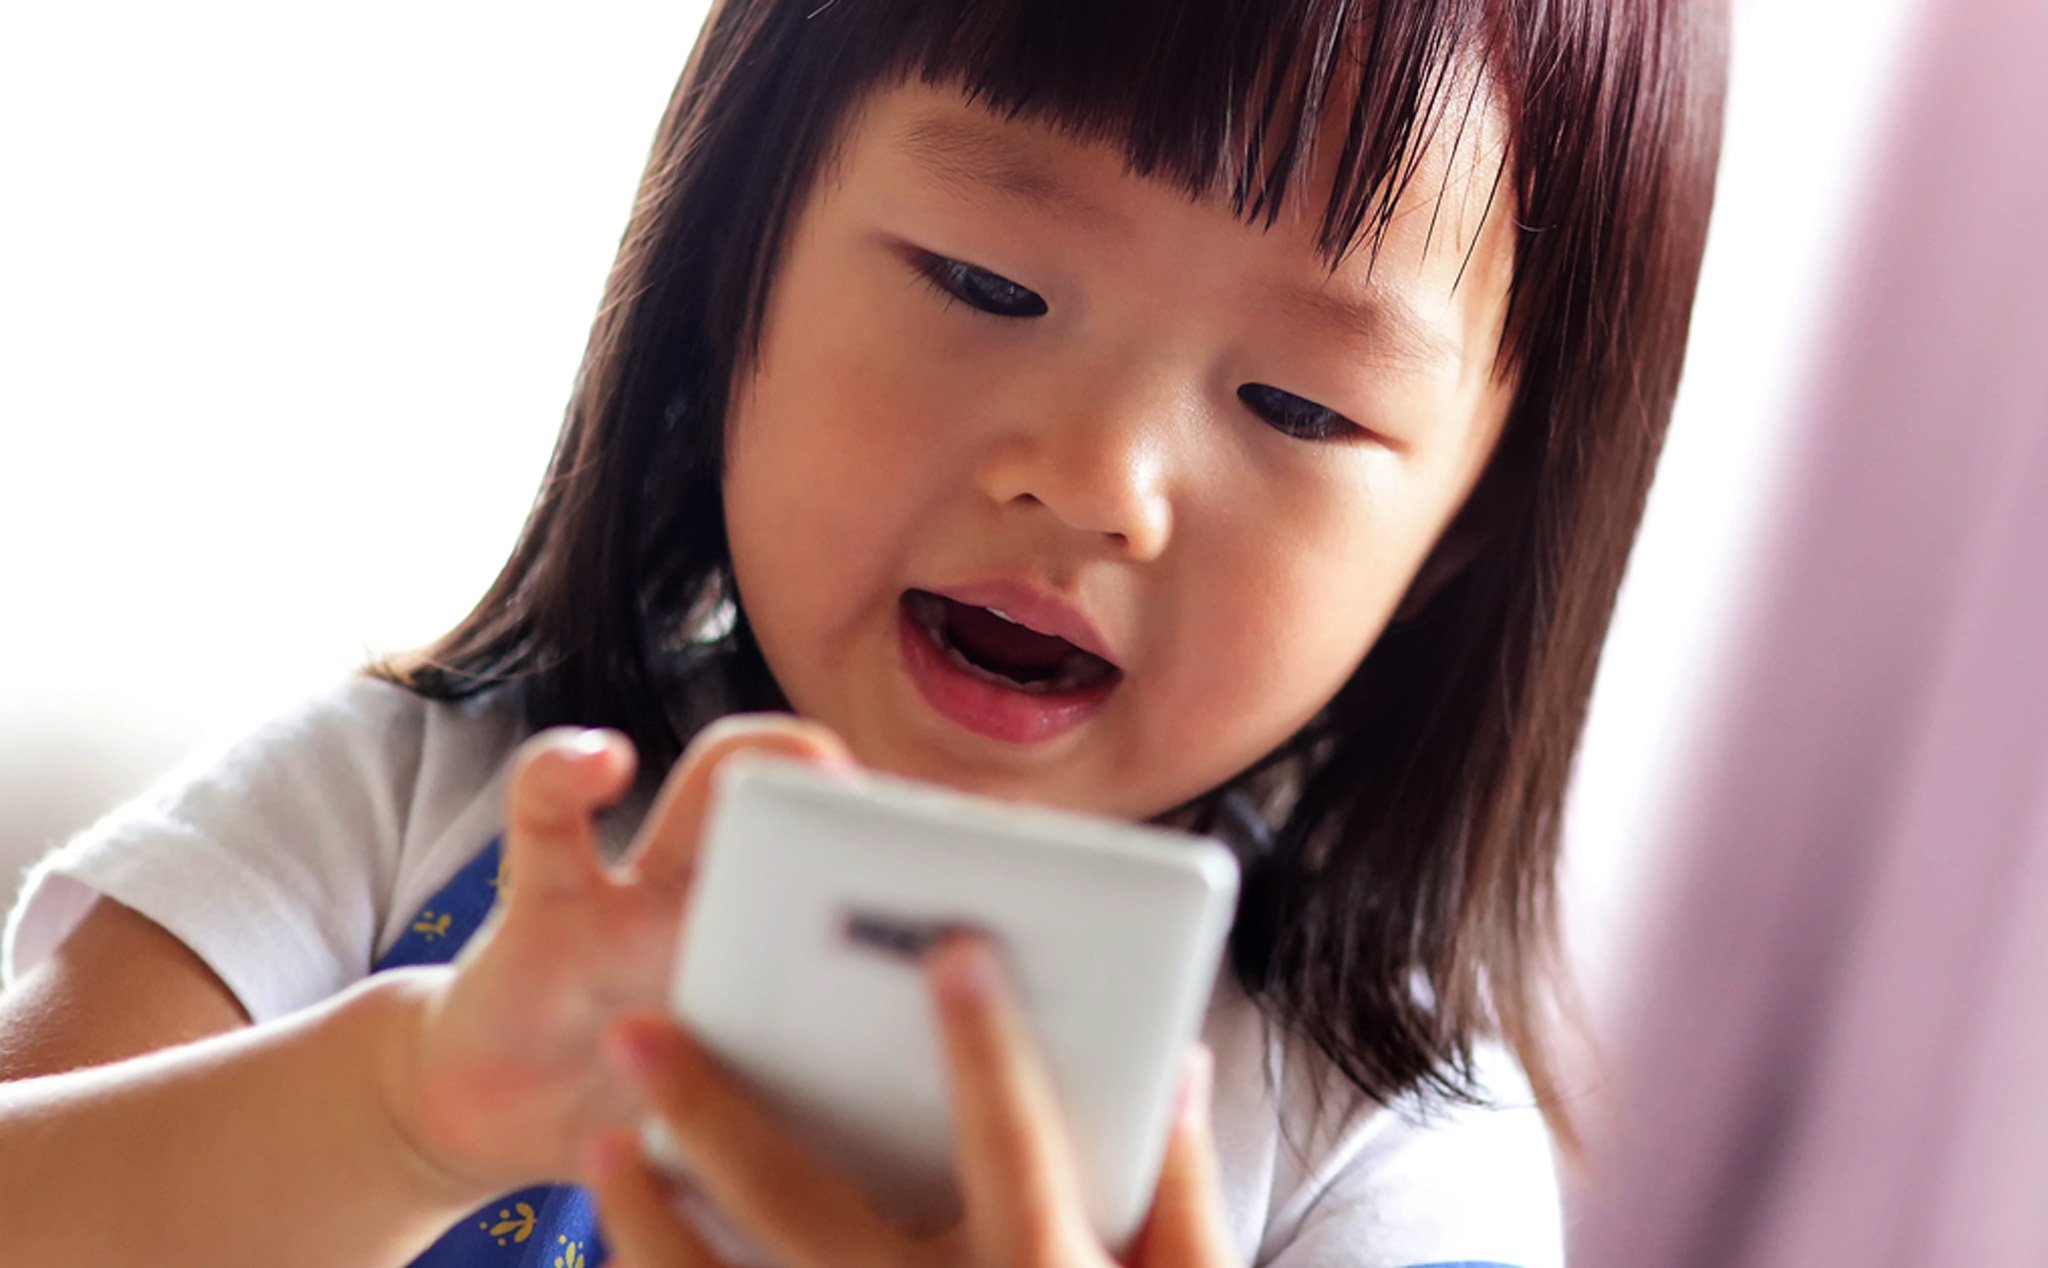 Lo ngại tật cận thị, Trung Quốc muốn kiểm soát thời gian chơi game của trẻ em xuống 1 tiếng mỗi ngày